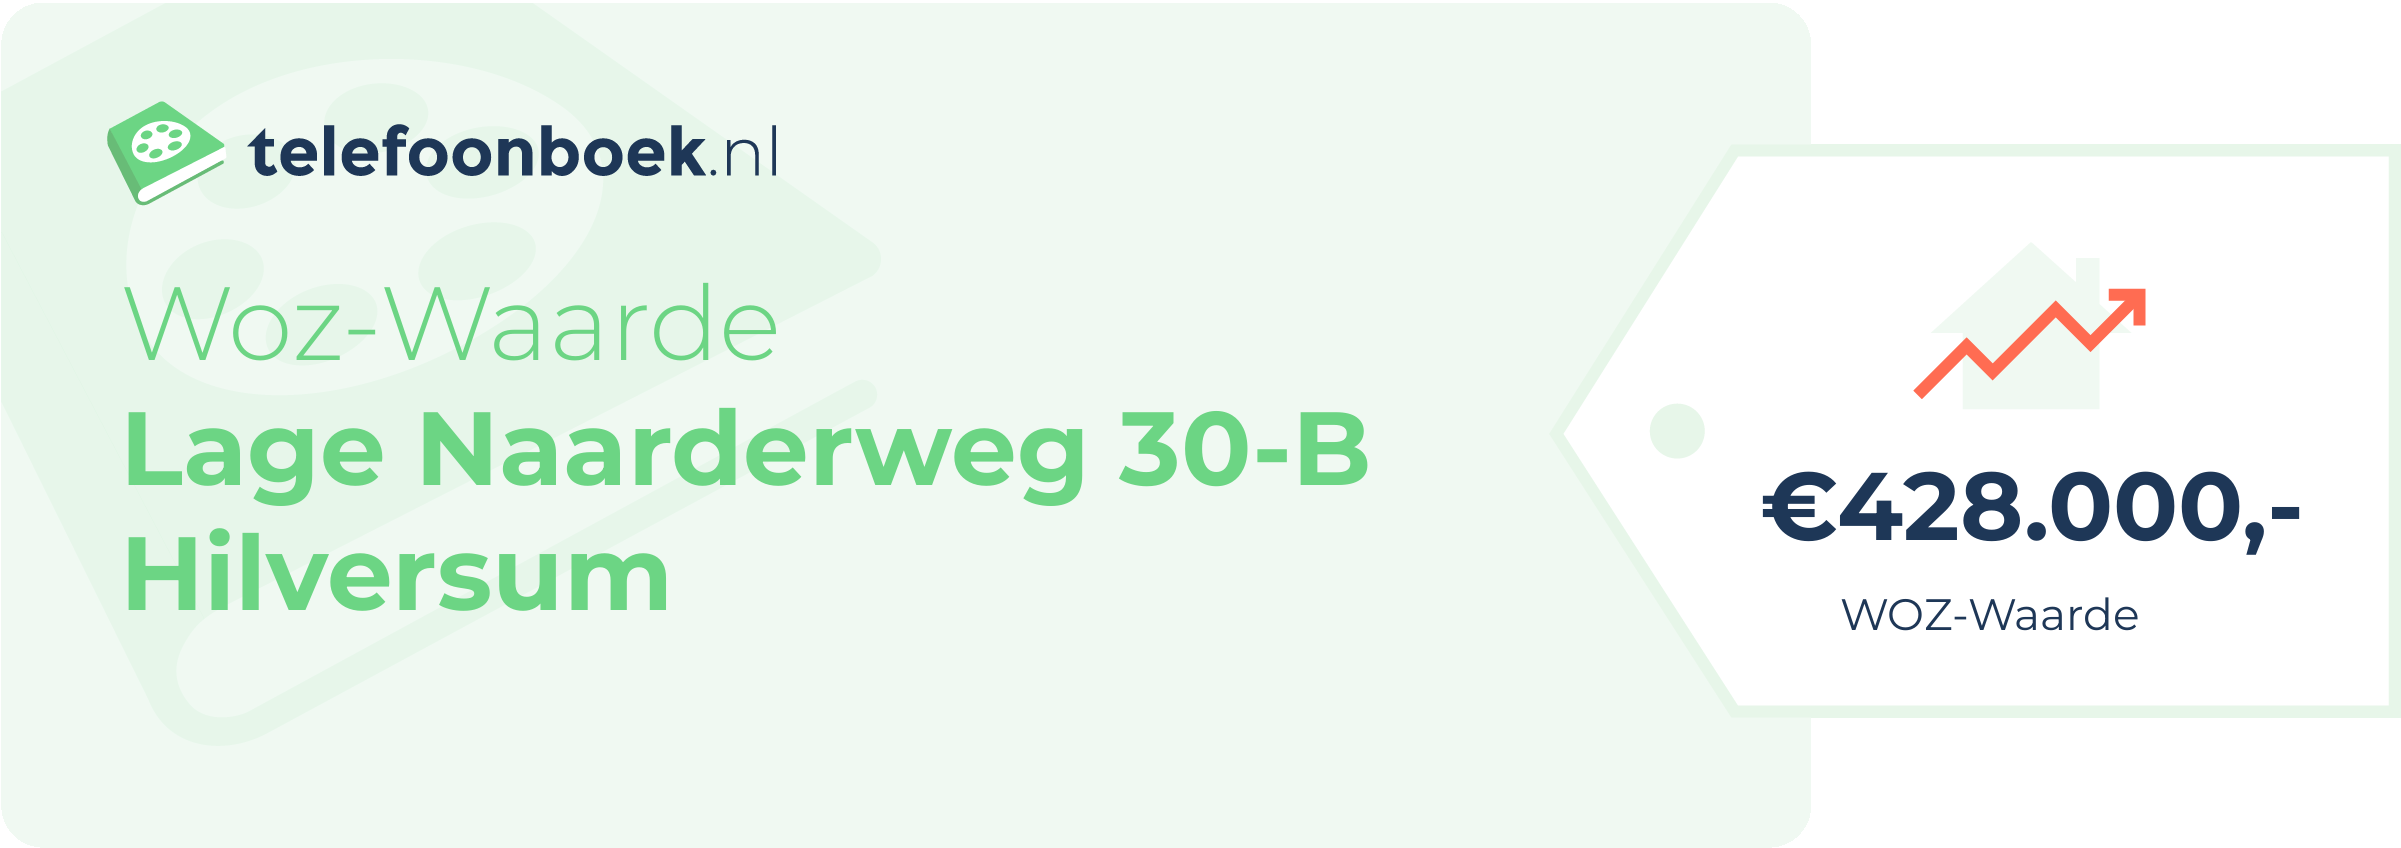 WOZ-waarde Lage Naarderweg 30-B Hilversum